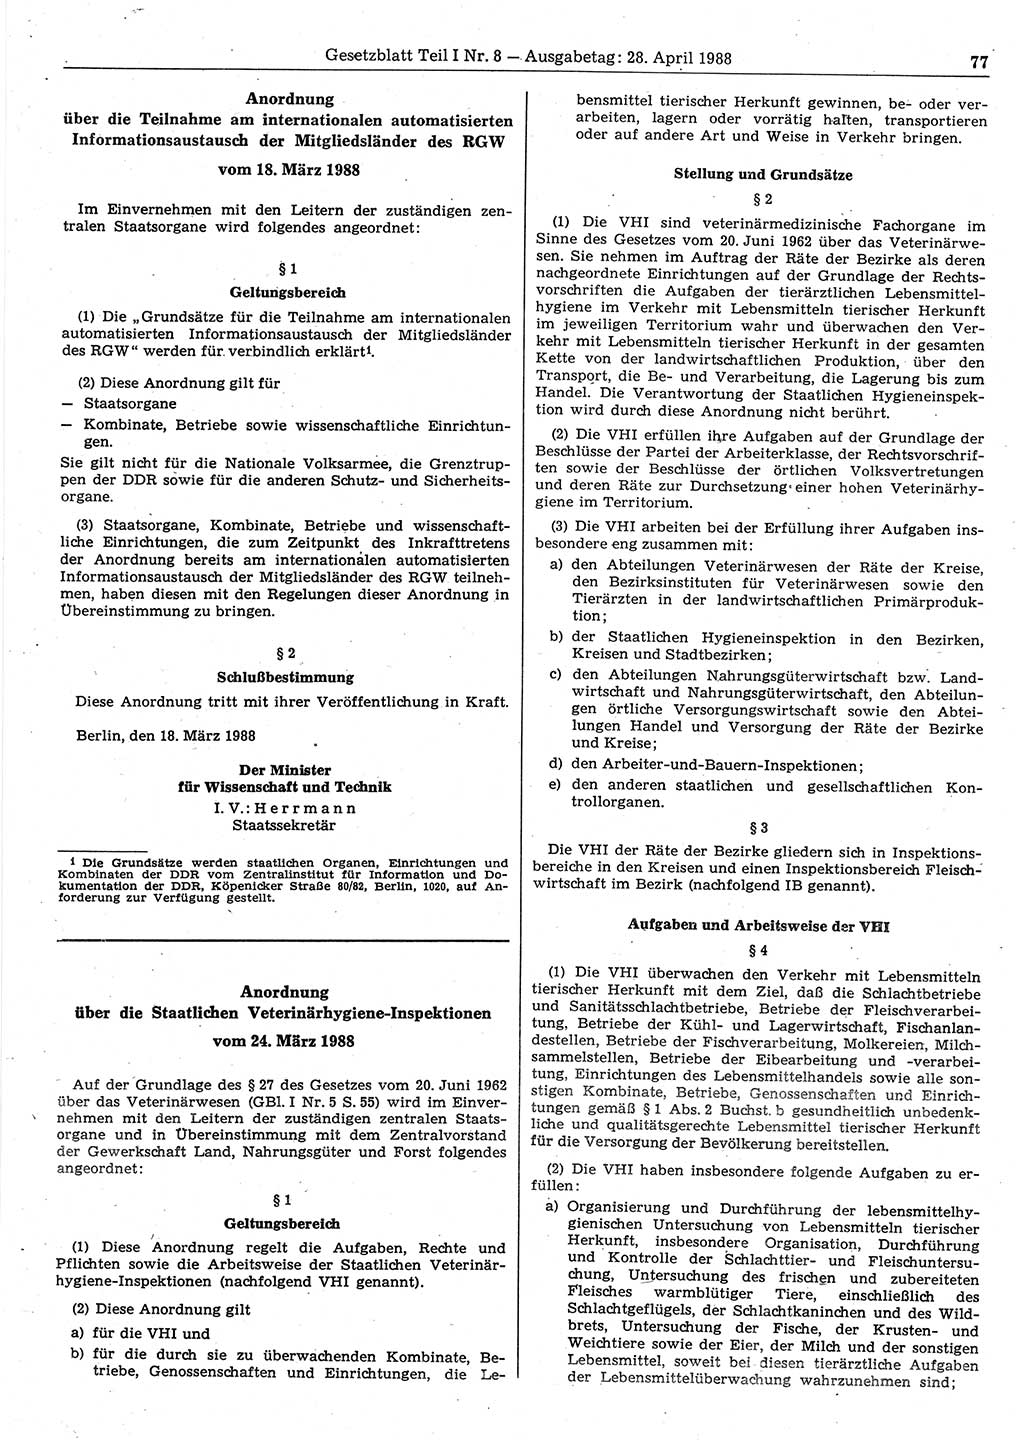 Gesetzblatt (GBl.) der Deutschen Demokratischen Republik (DDR) Teil Ⅰ 1988, Seite 77 (GBl. DDR Ⅰ 1988, S. 77)